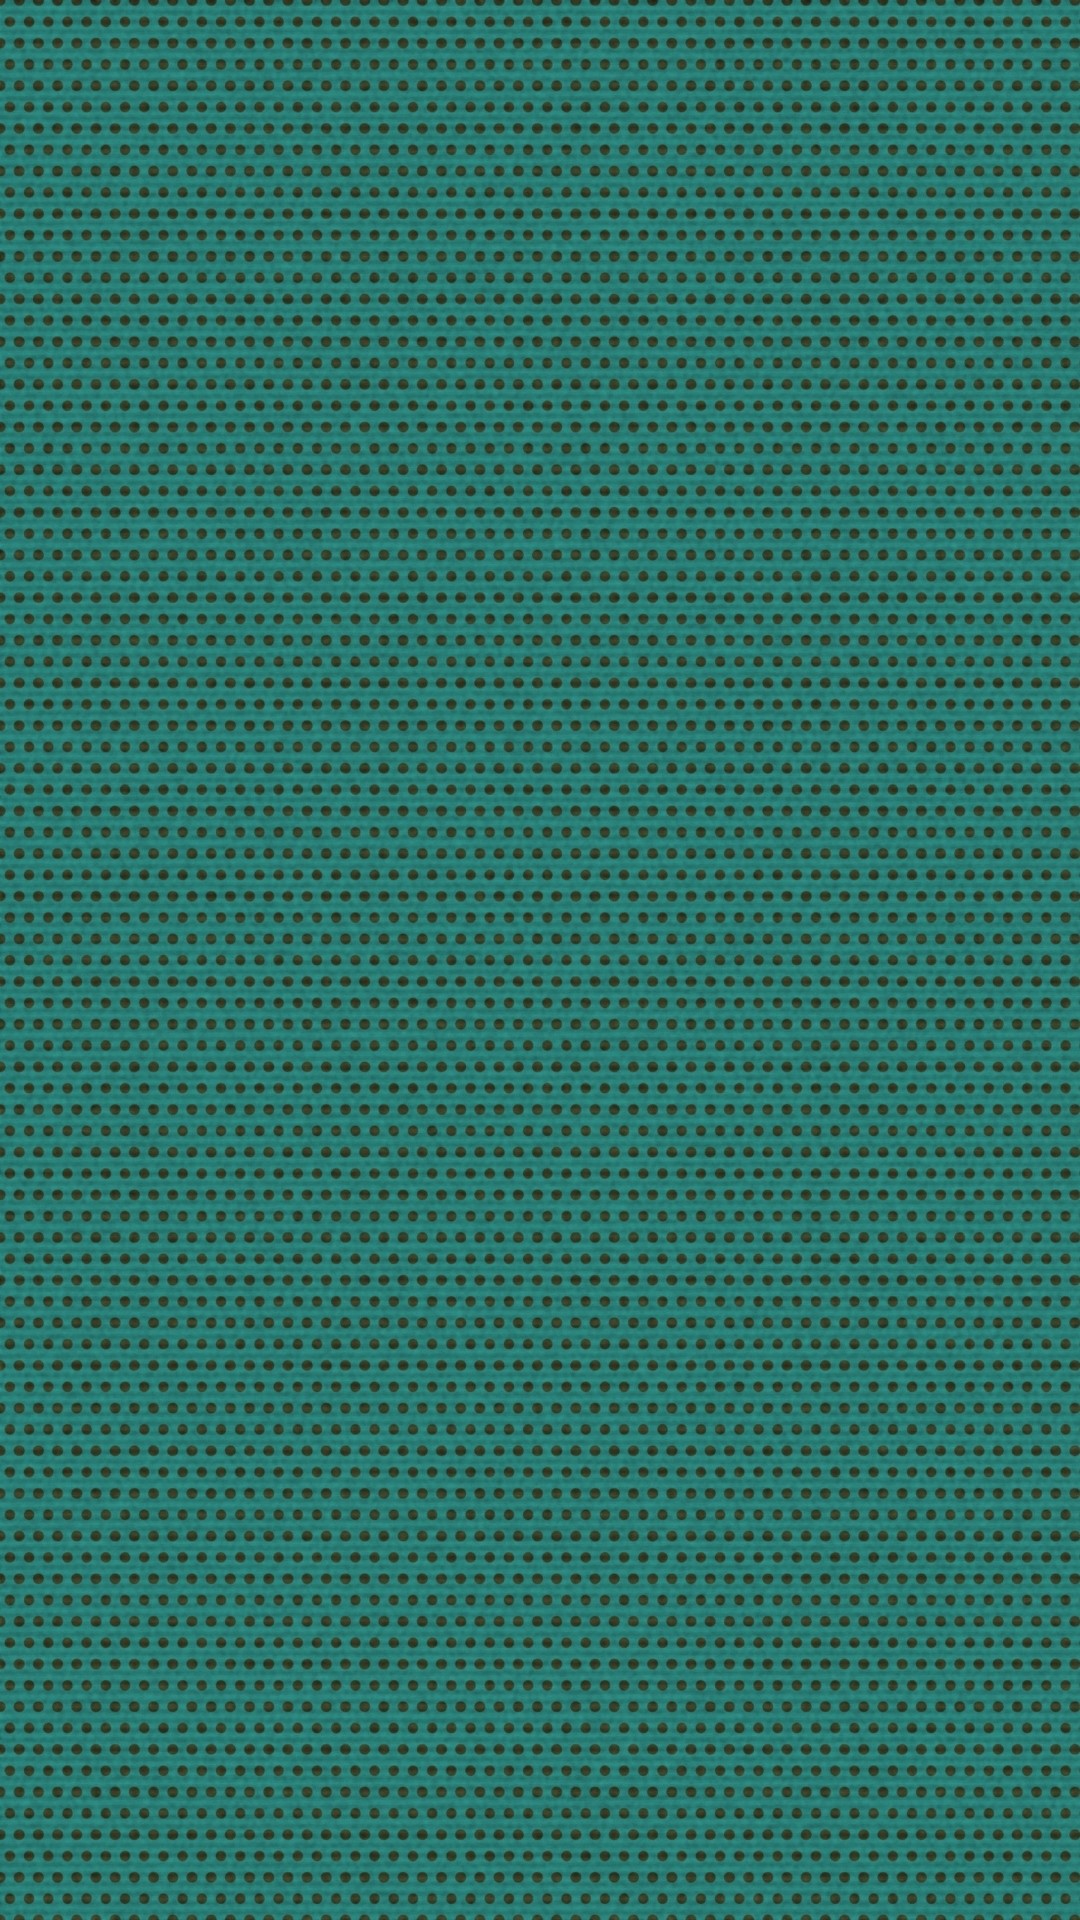 Iphone 6 Plus Wallpaper Green Pattern 07 - Symmetry - HD Wallpaper 